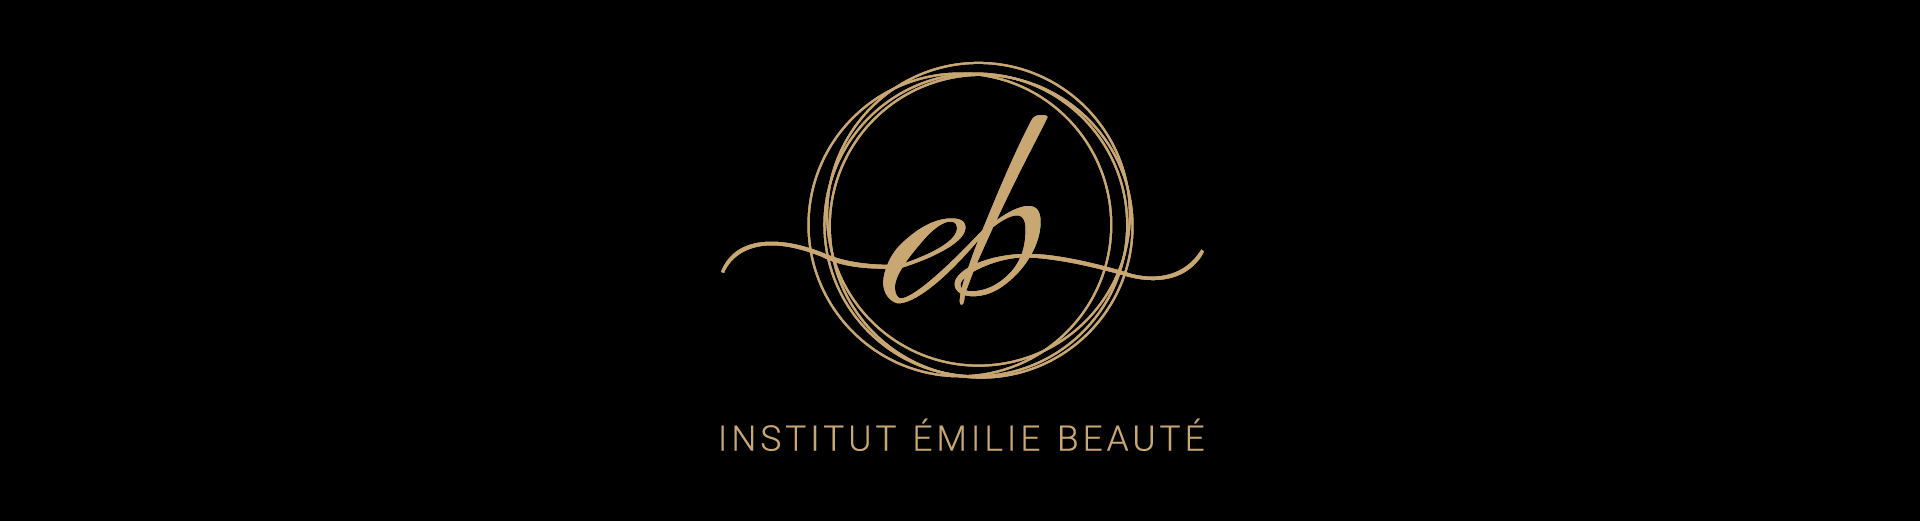 emilie beauté institut logo